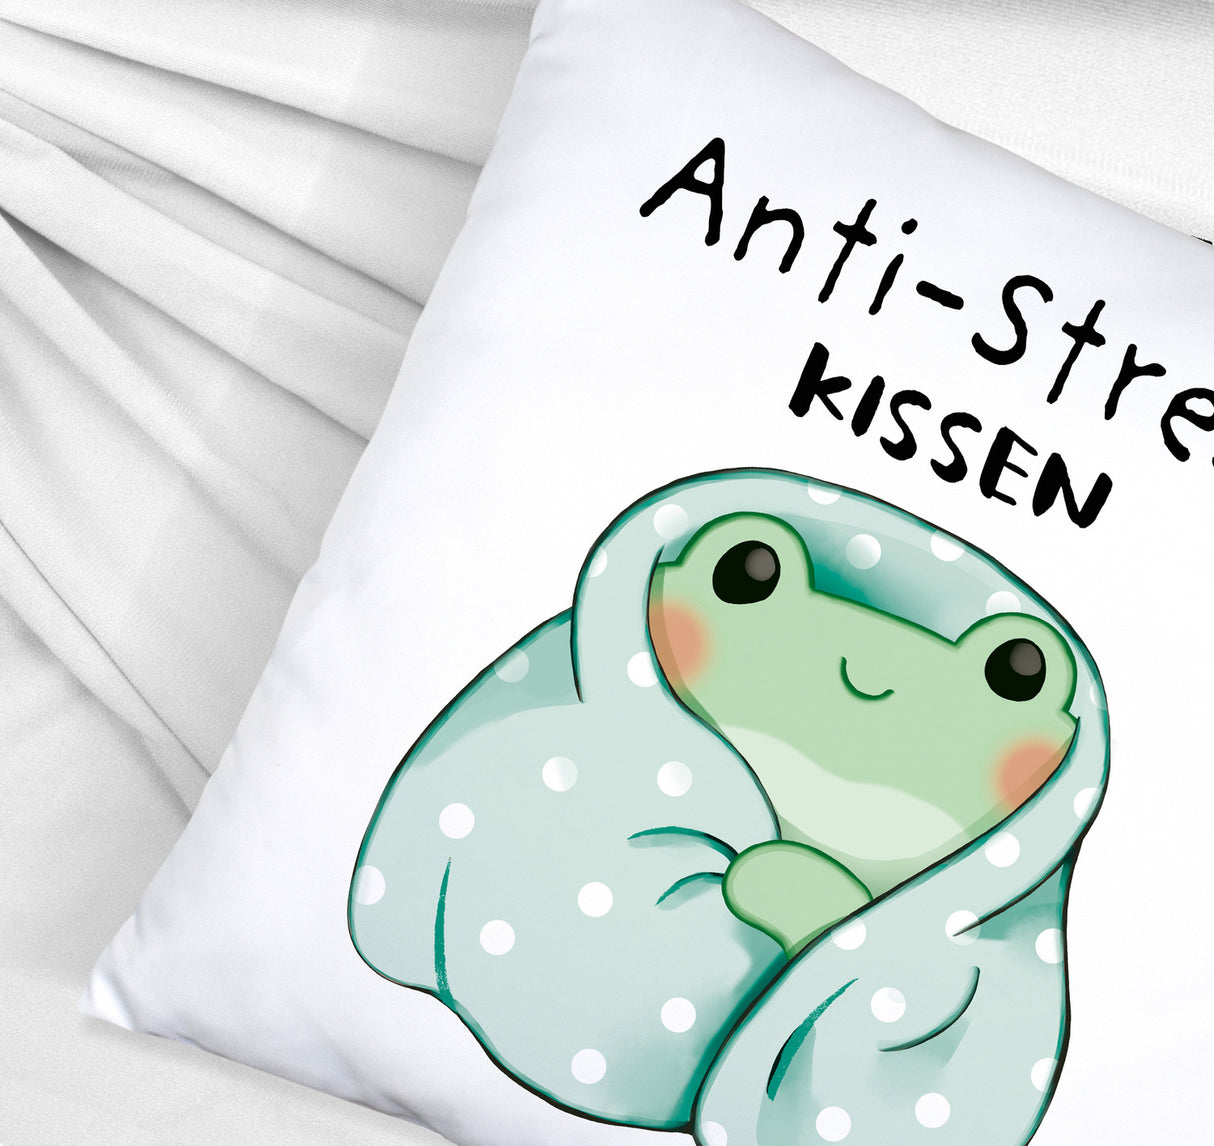 Frosch er Decke Kissen mit Spruch Anti-Stress Kissen